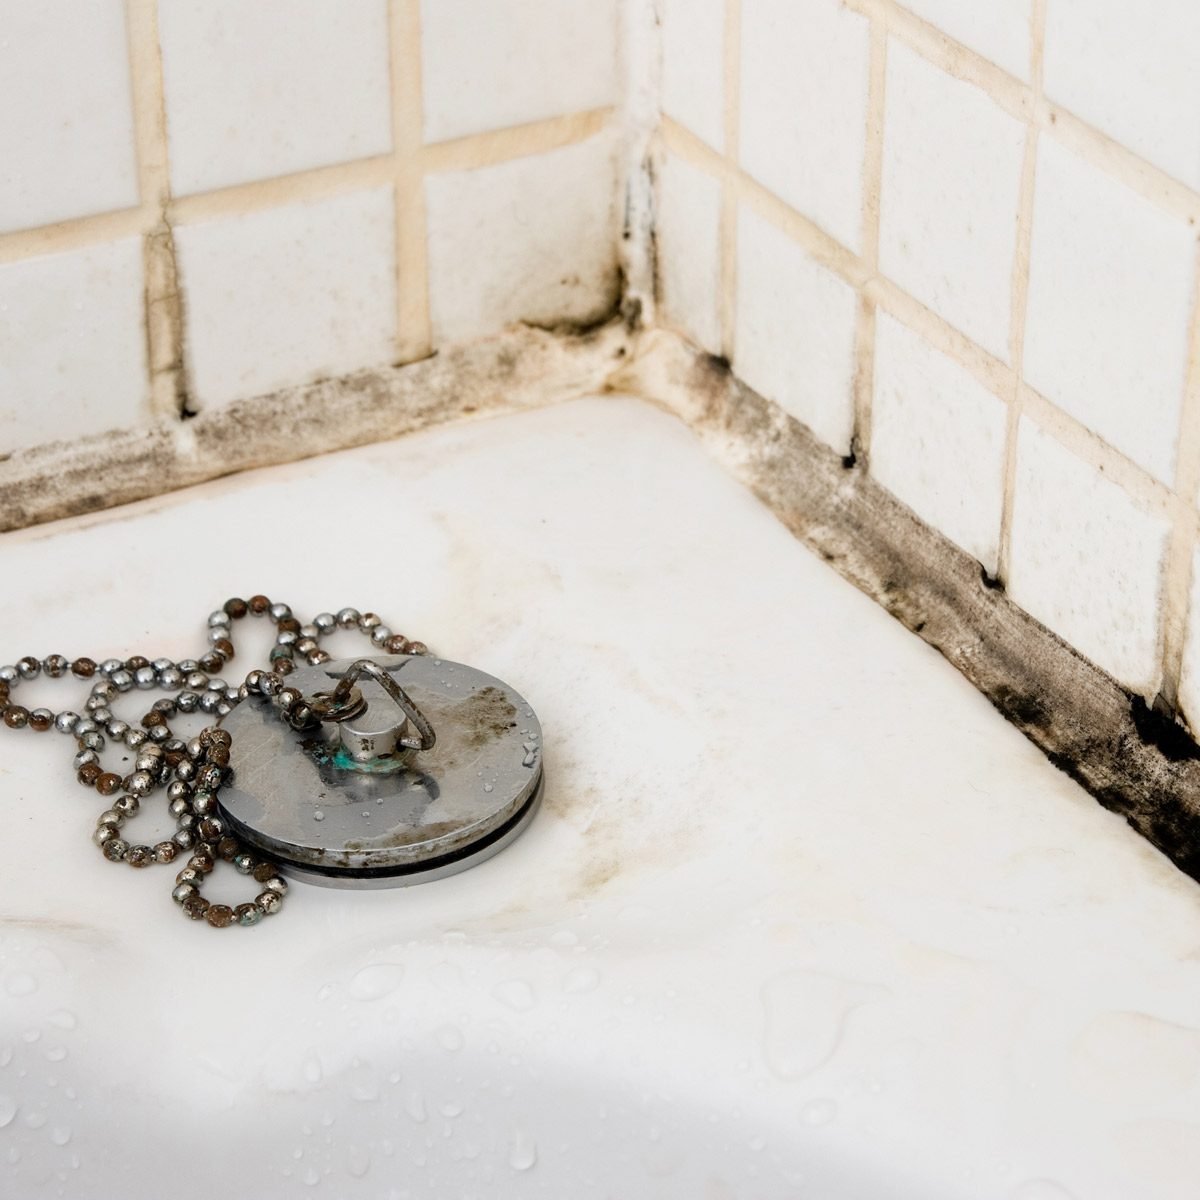 RÃ©sultat de recherche d'images pour "bathroom mold"